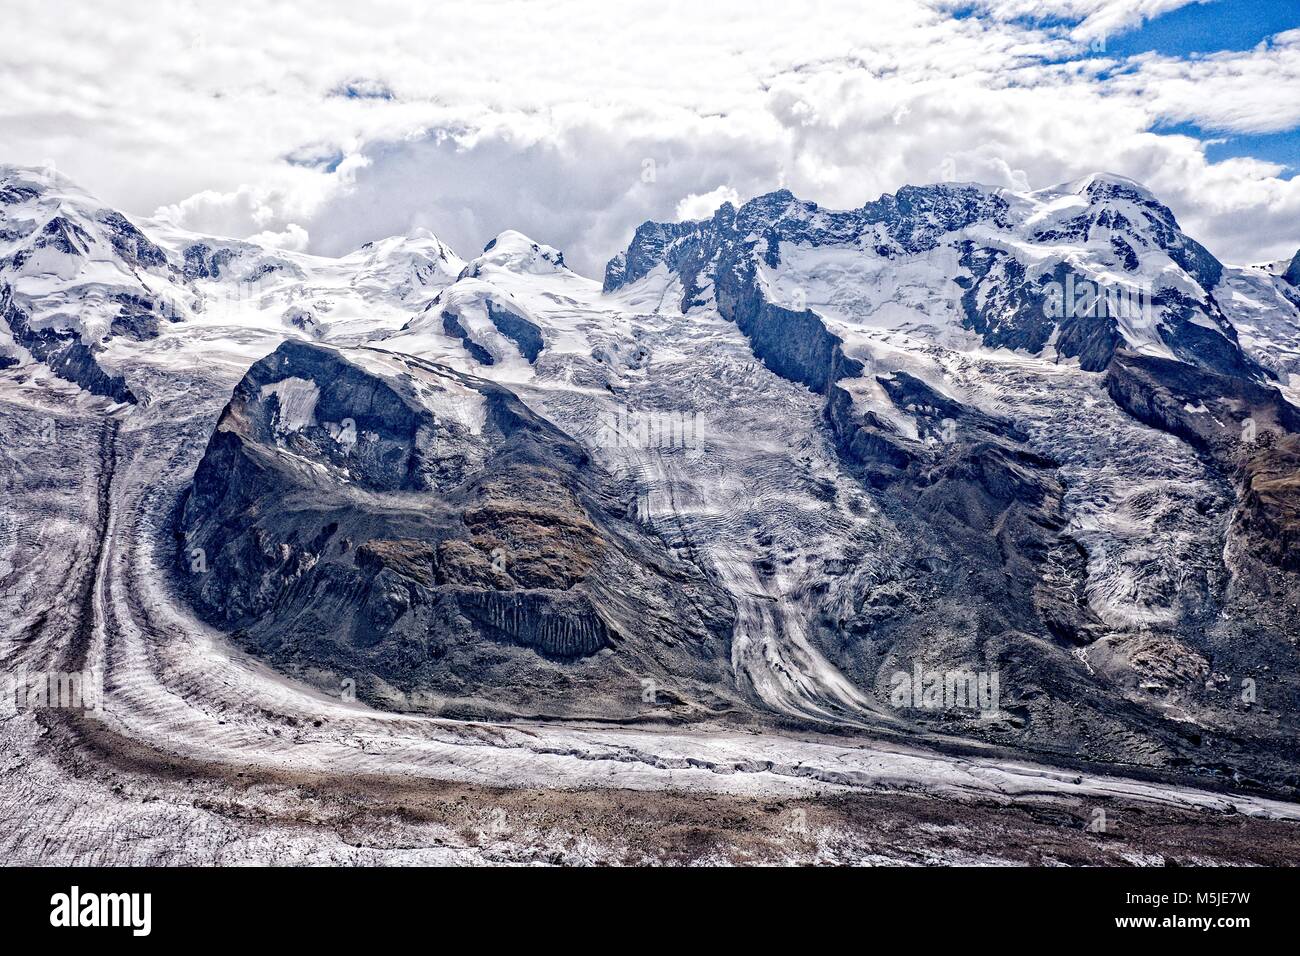 Los glaciares que alimentan el Gornergletscher revela una disminución del volumen de hielo y restos de morrenas. Foto de stock